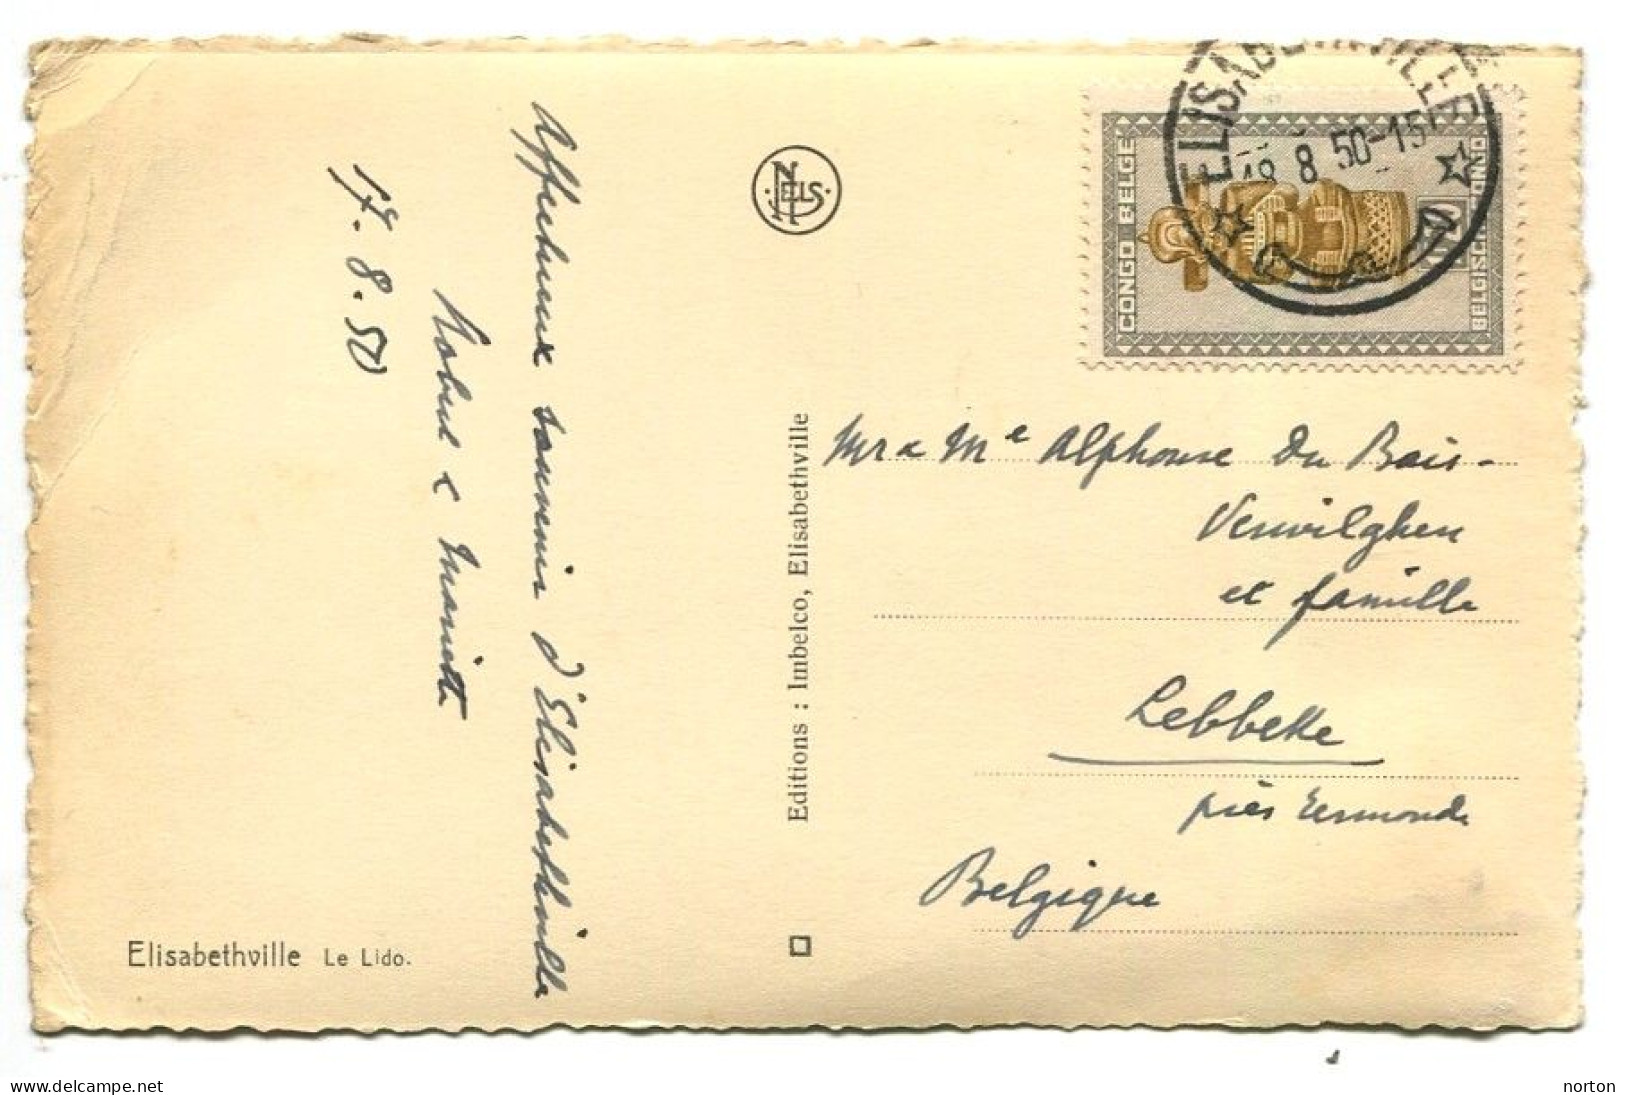 Congo Elisabethville Oblit. Keach 8B2 Sur C.O.B. 285A Sur Carte Postale Vers Leebekke Le 18/08/1950 - Lettres & Documents